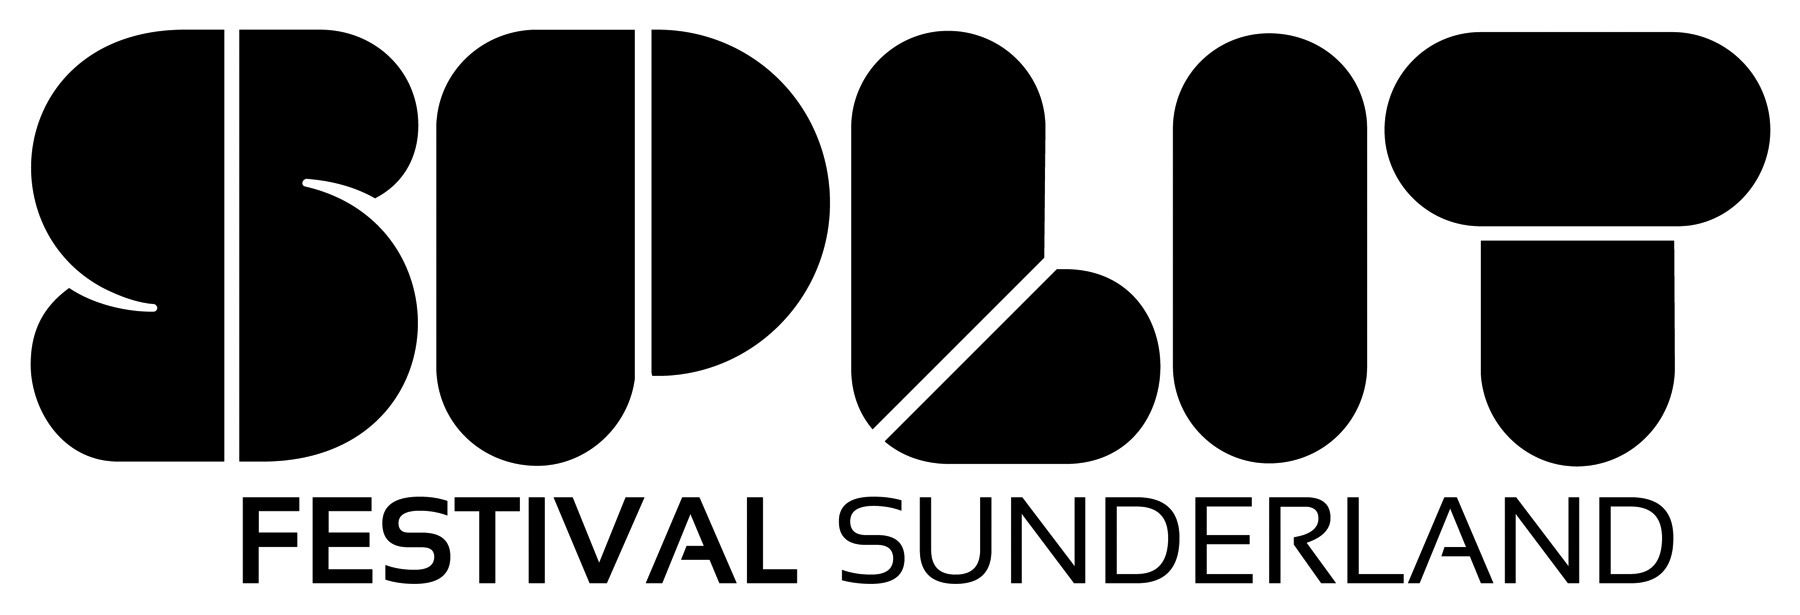 Identity for Sunderland's Split Festival.